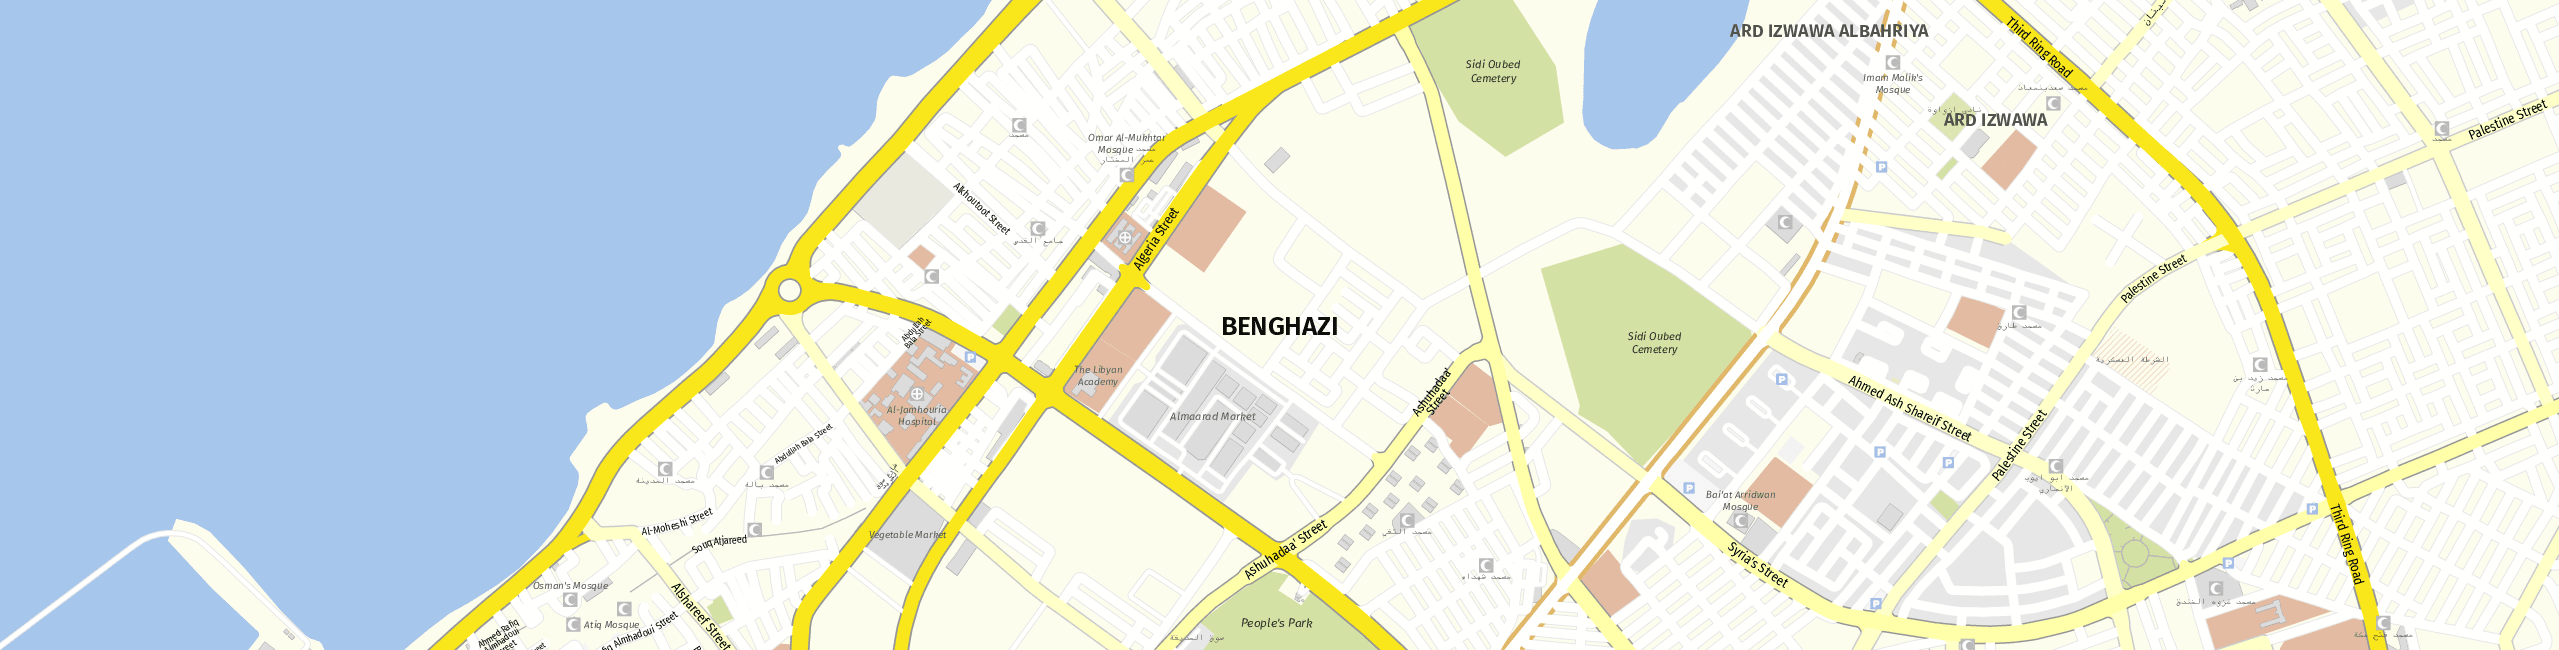 Stadtplan Bengasi zum Downloaden.